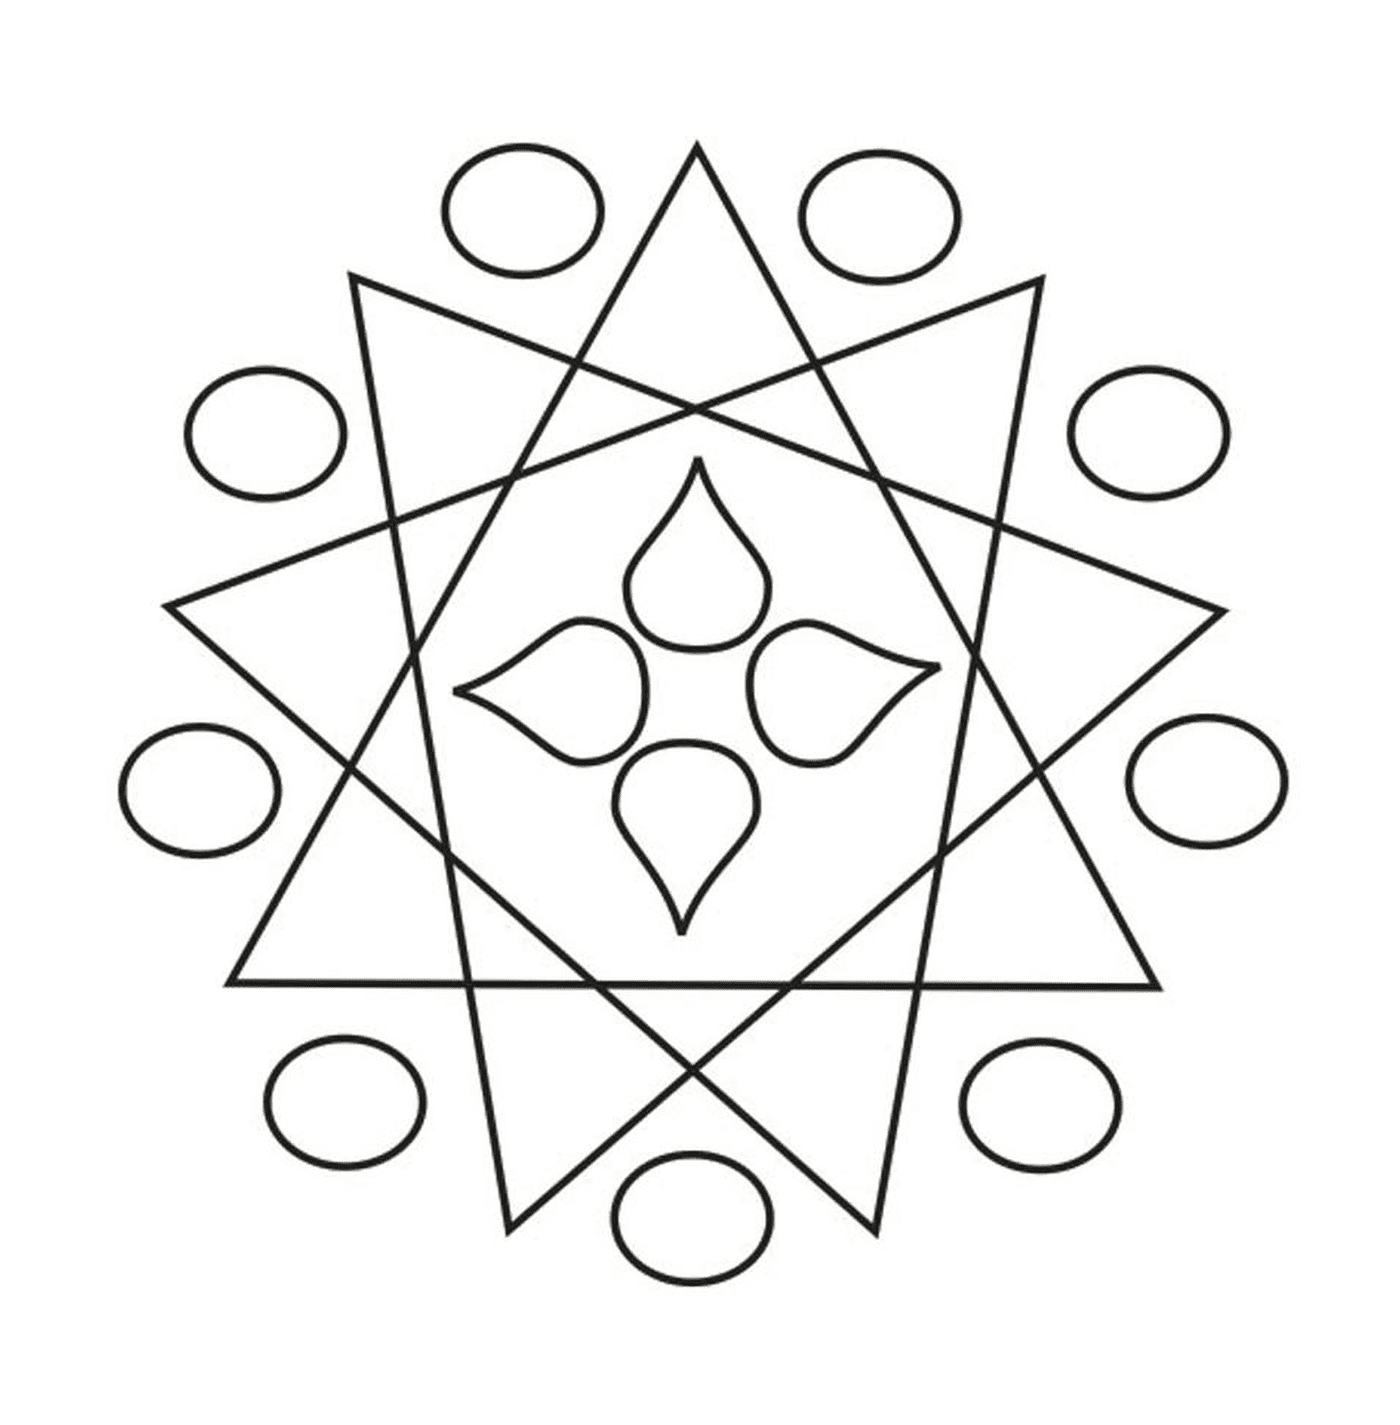  Un disegno geometrico 